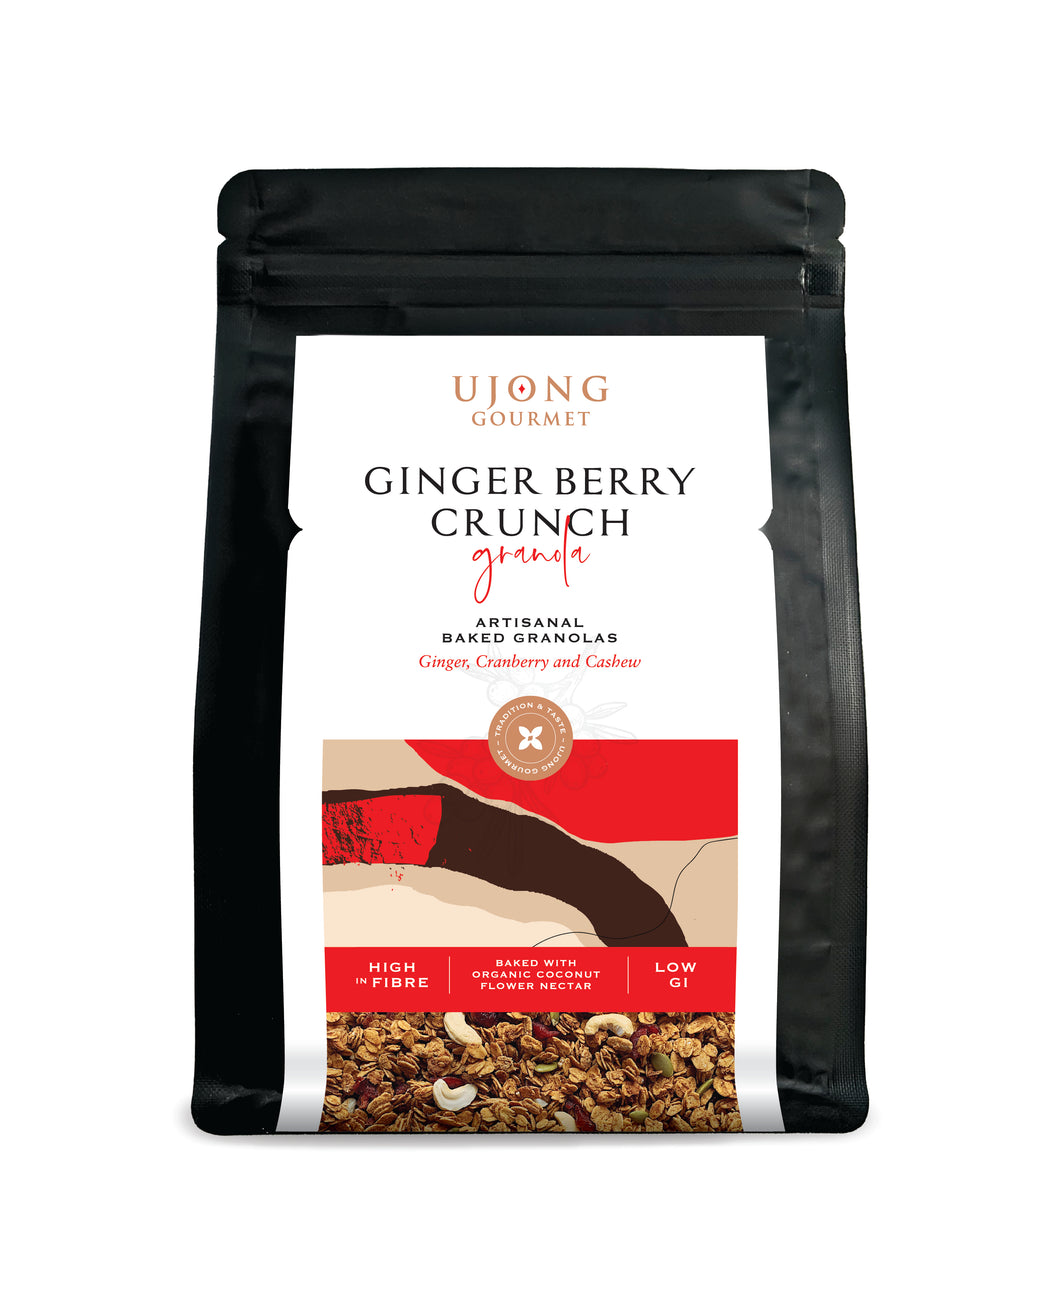 Ginger Berry Crunch Artisanal Baked Granola